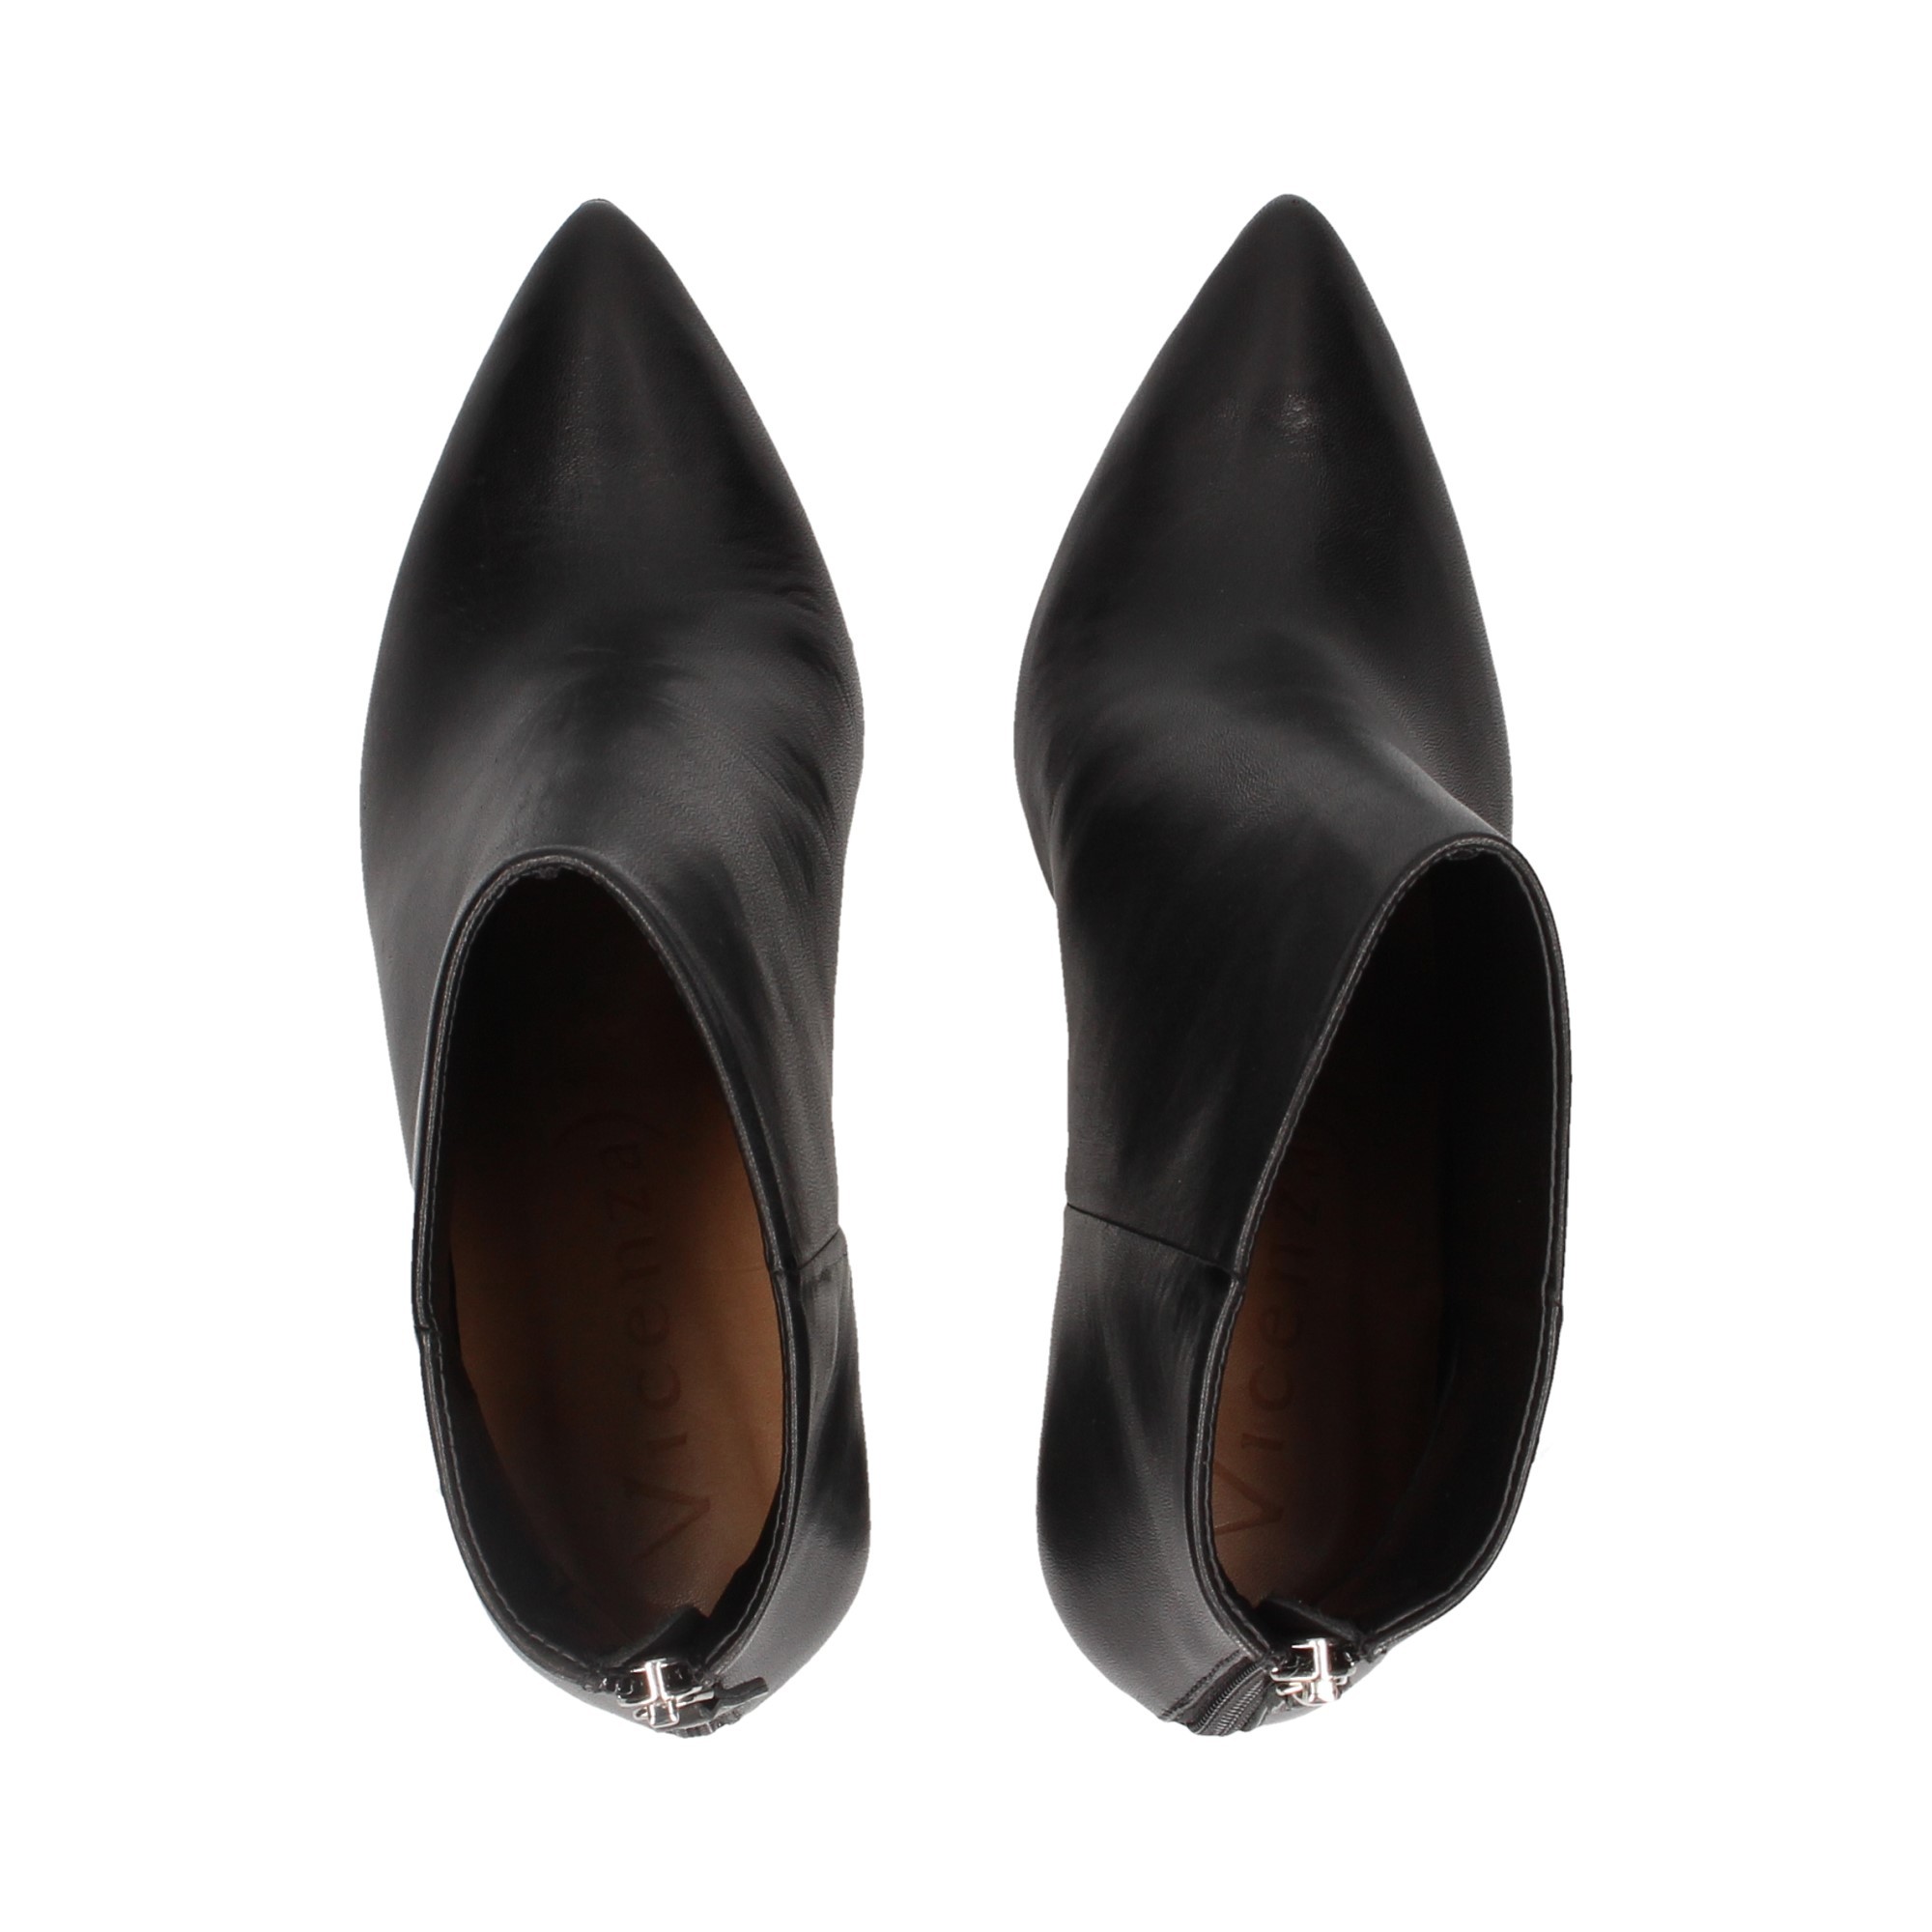 boot-heel-heel-studs-black-leather